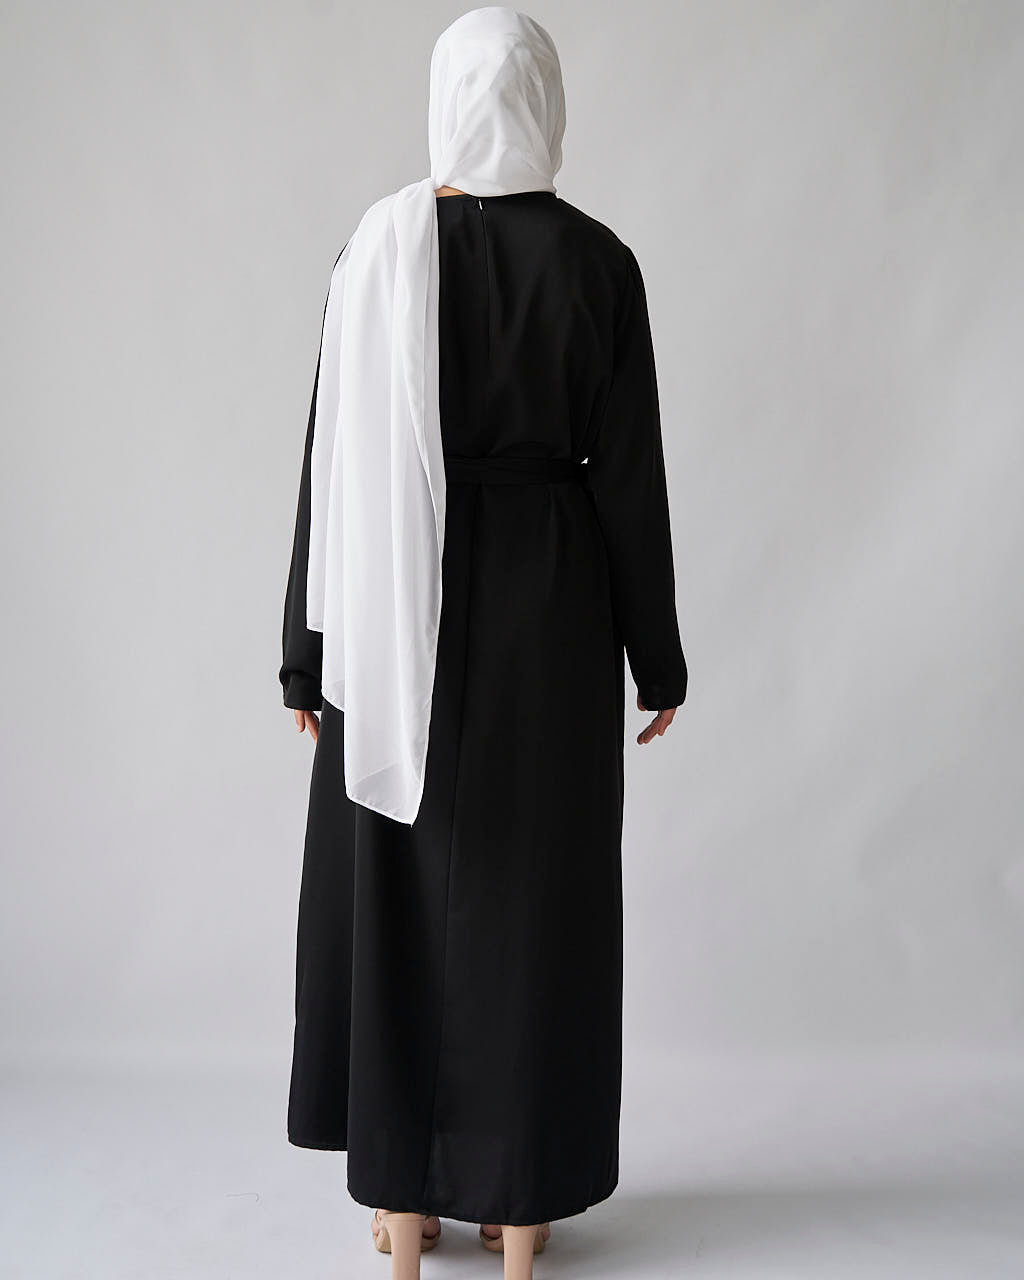 Essential Abaya - Black - Essential Abaya - Fajr Noor